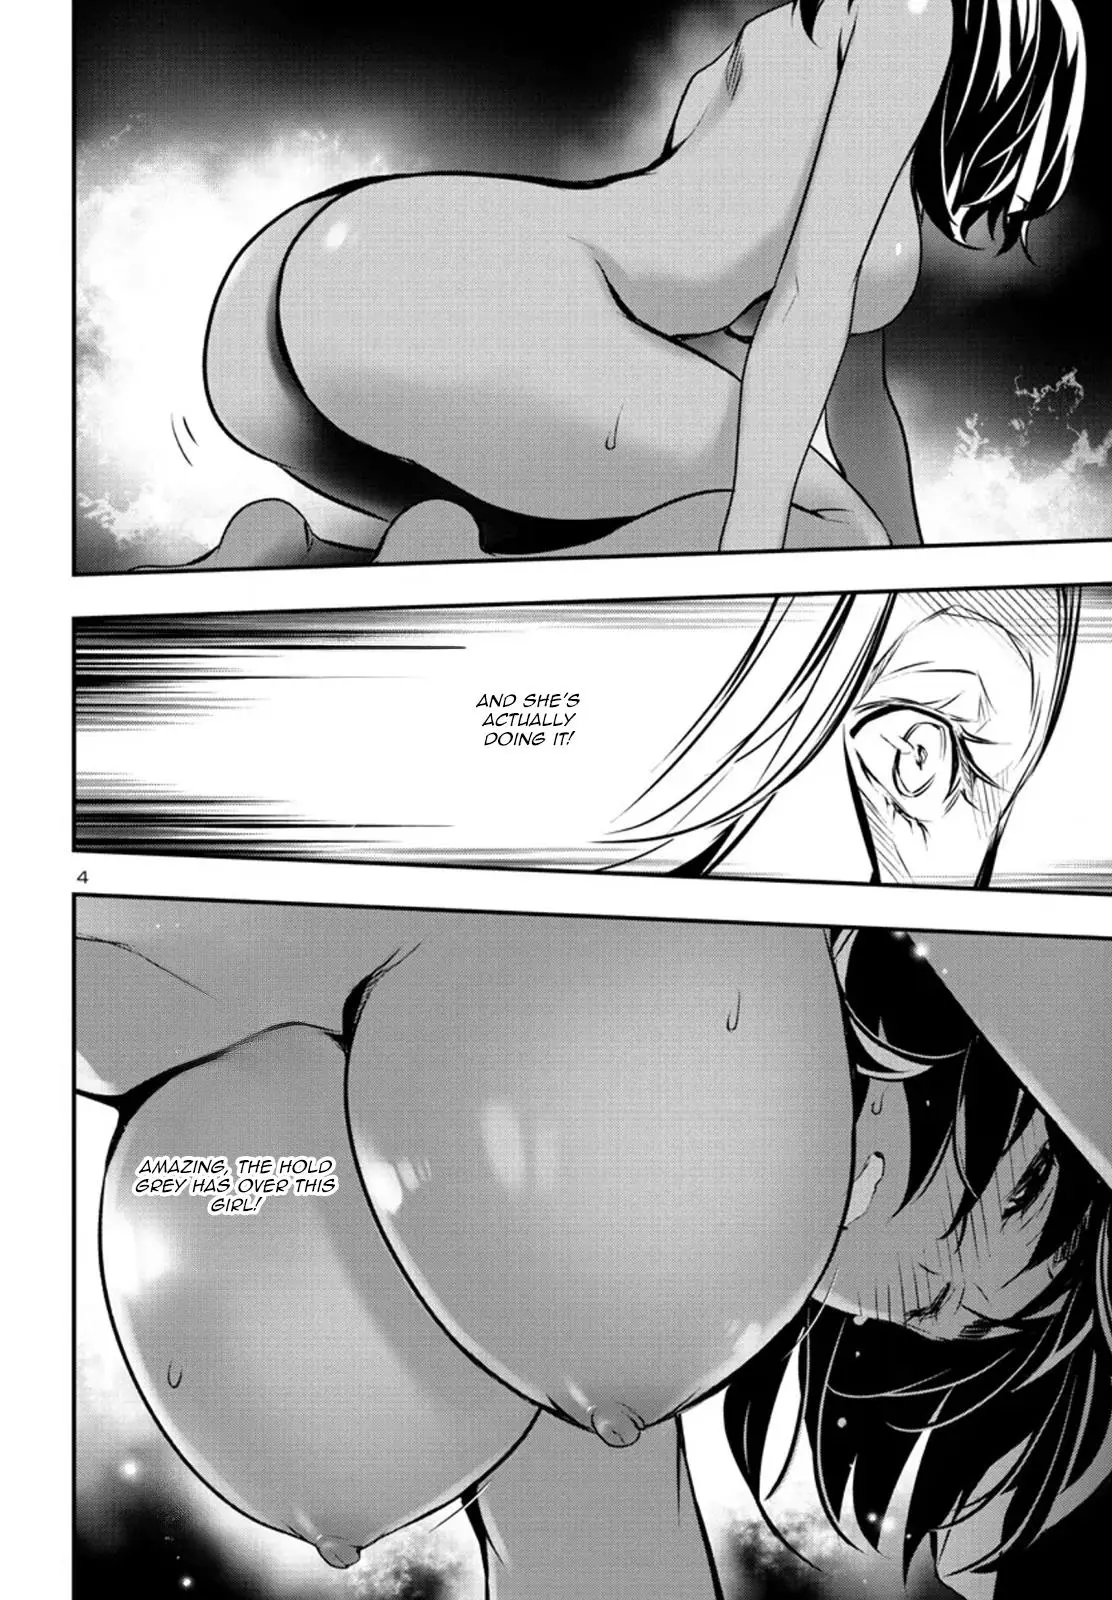 Shinju no Nectar - 76 page 4-6588f192